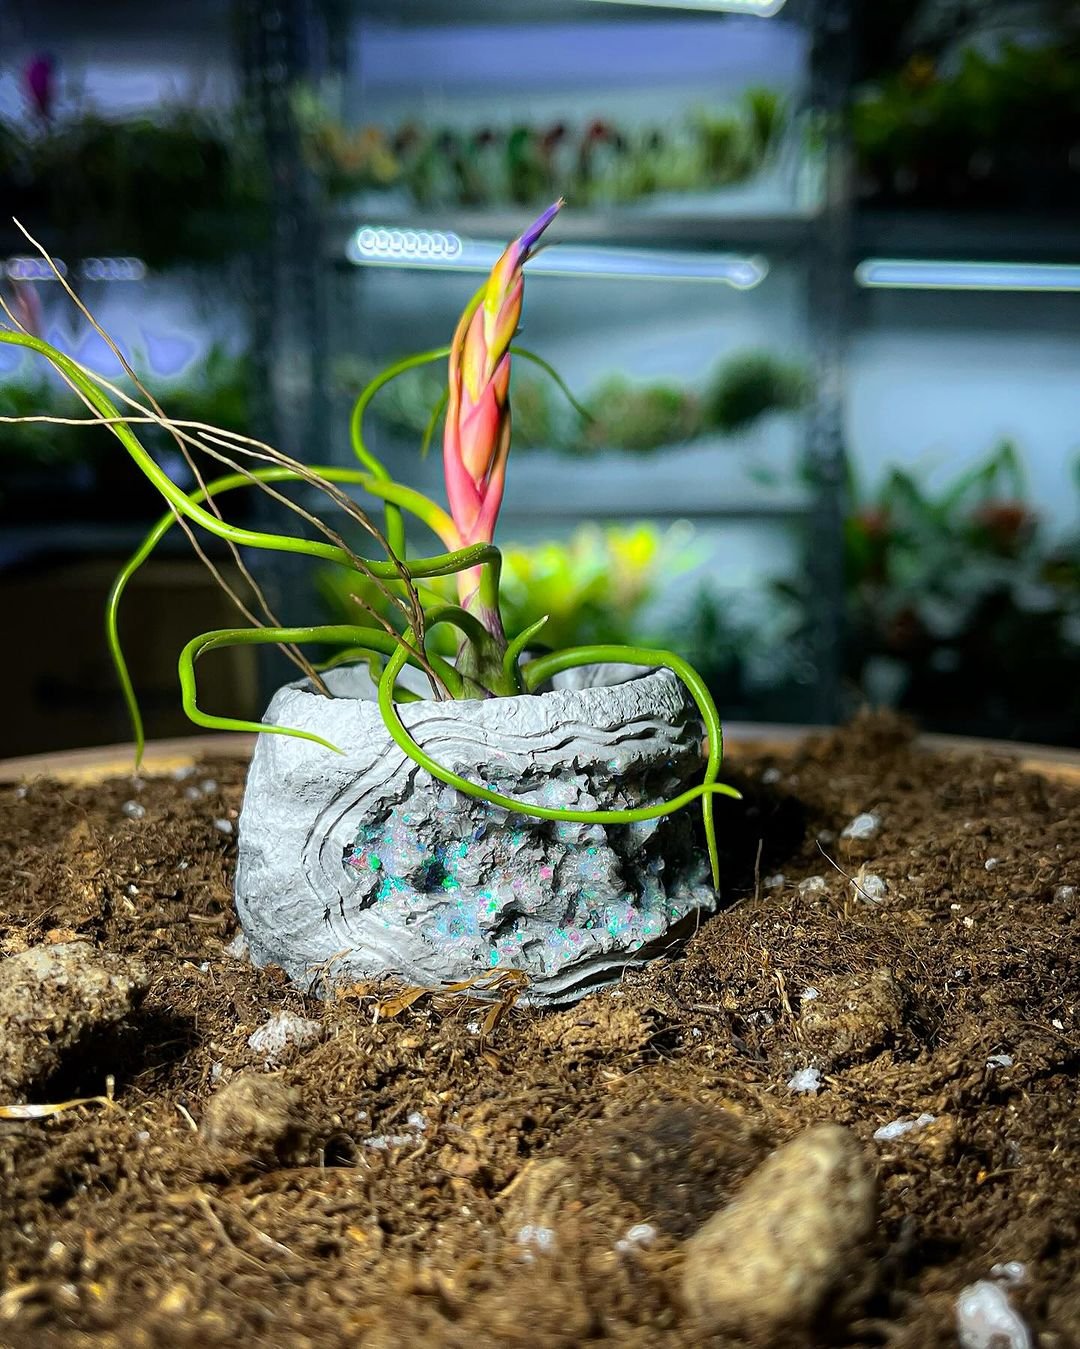 A Tillandsia bulbosa plant in a pot on a dirt floor.